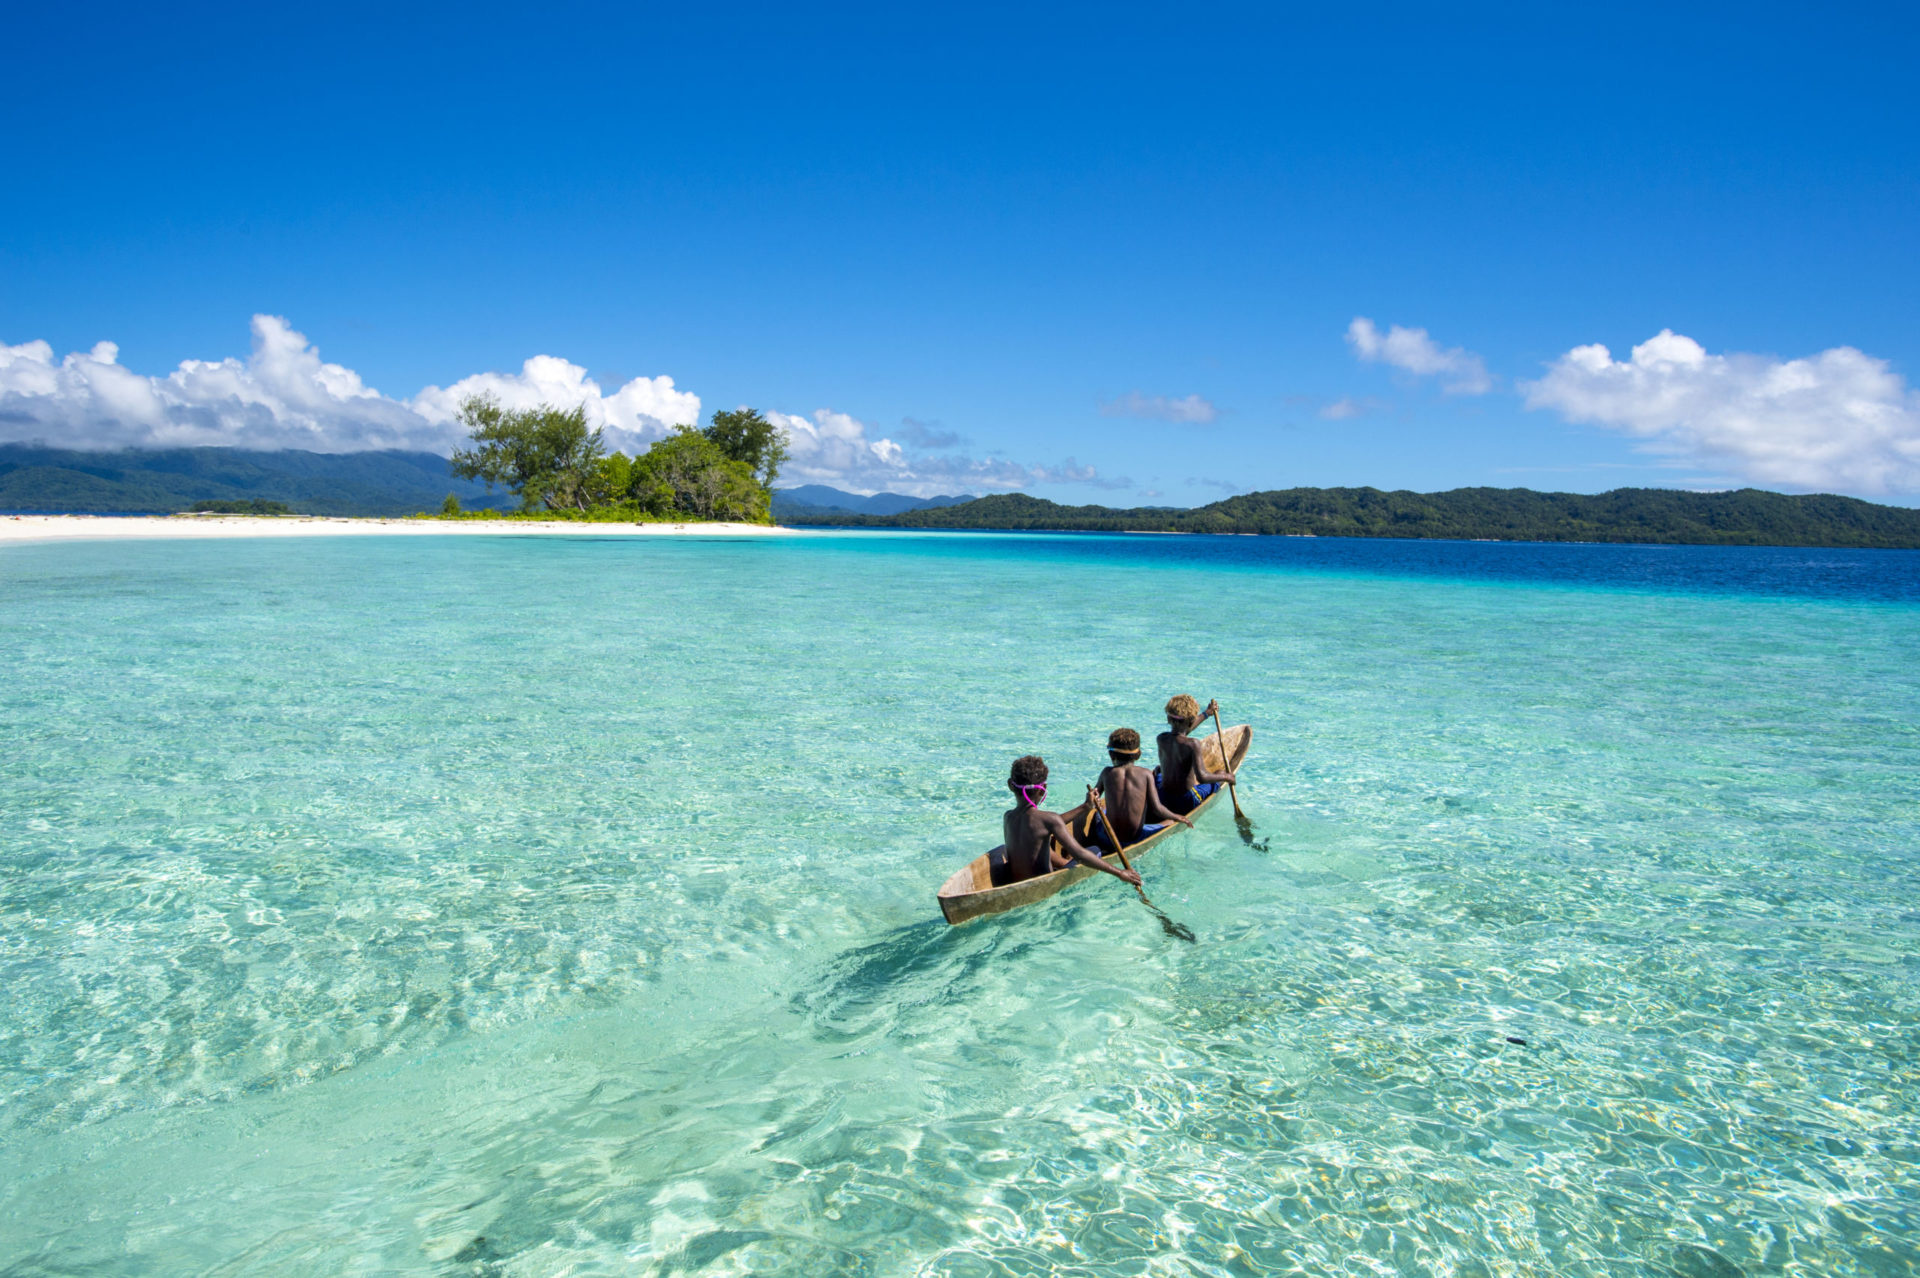 Sensational Solomon Island, Scuba diving, Underwater adventures, Nature's marvels, 1920x1280 HD Desktop